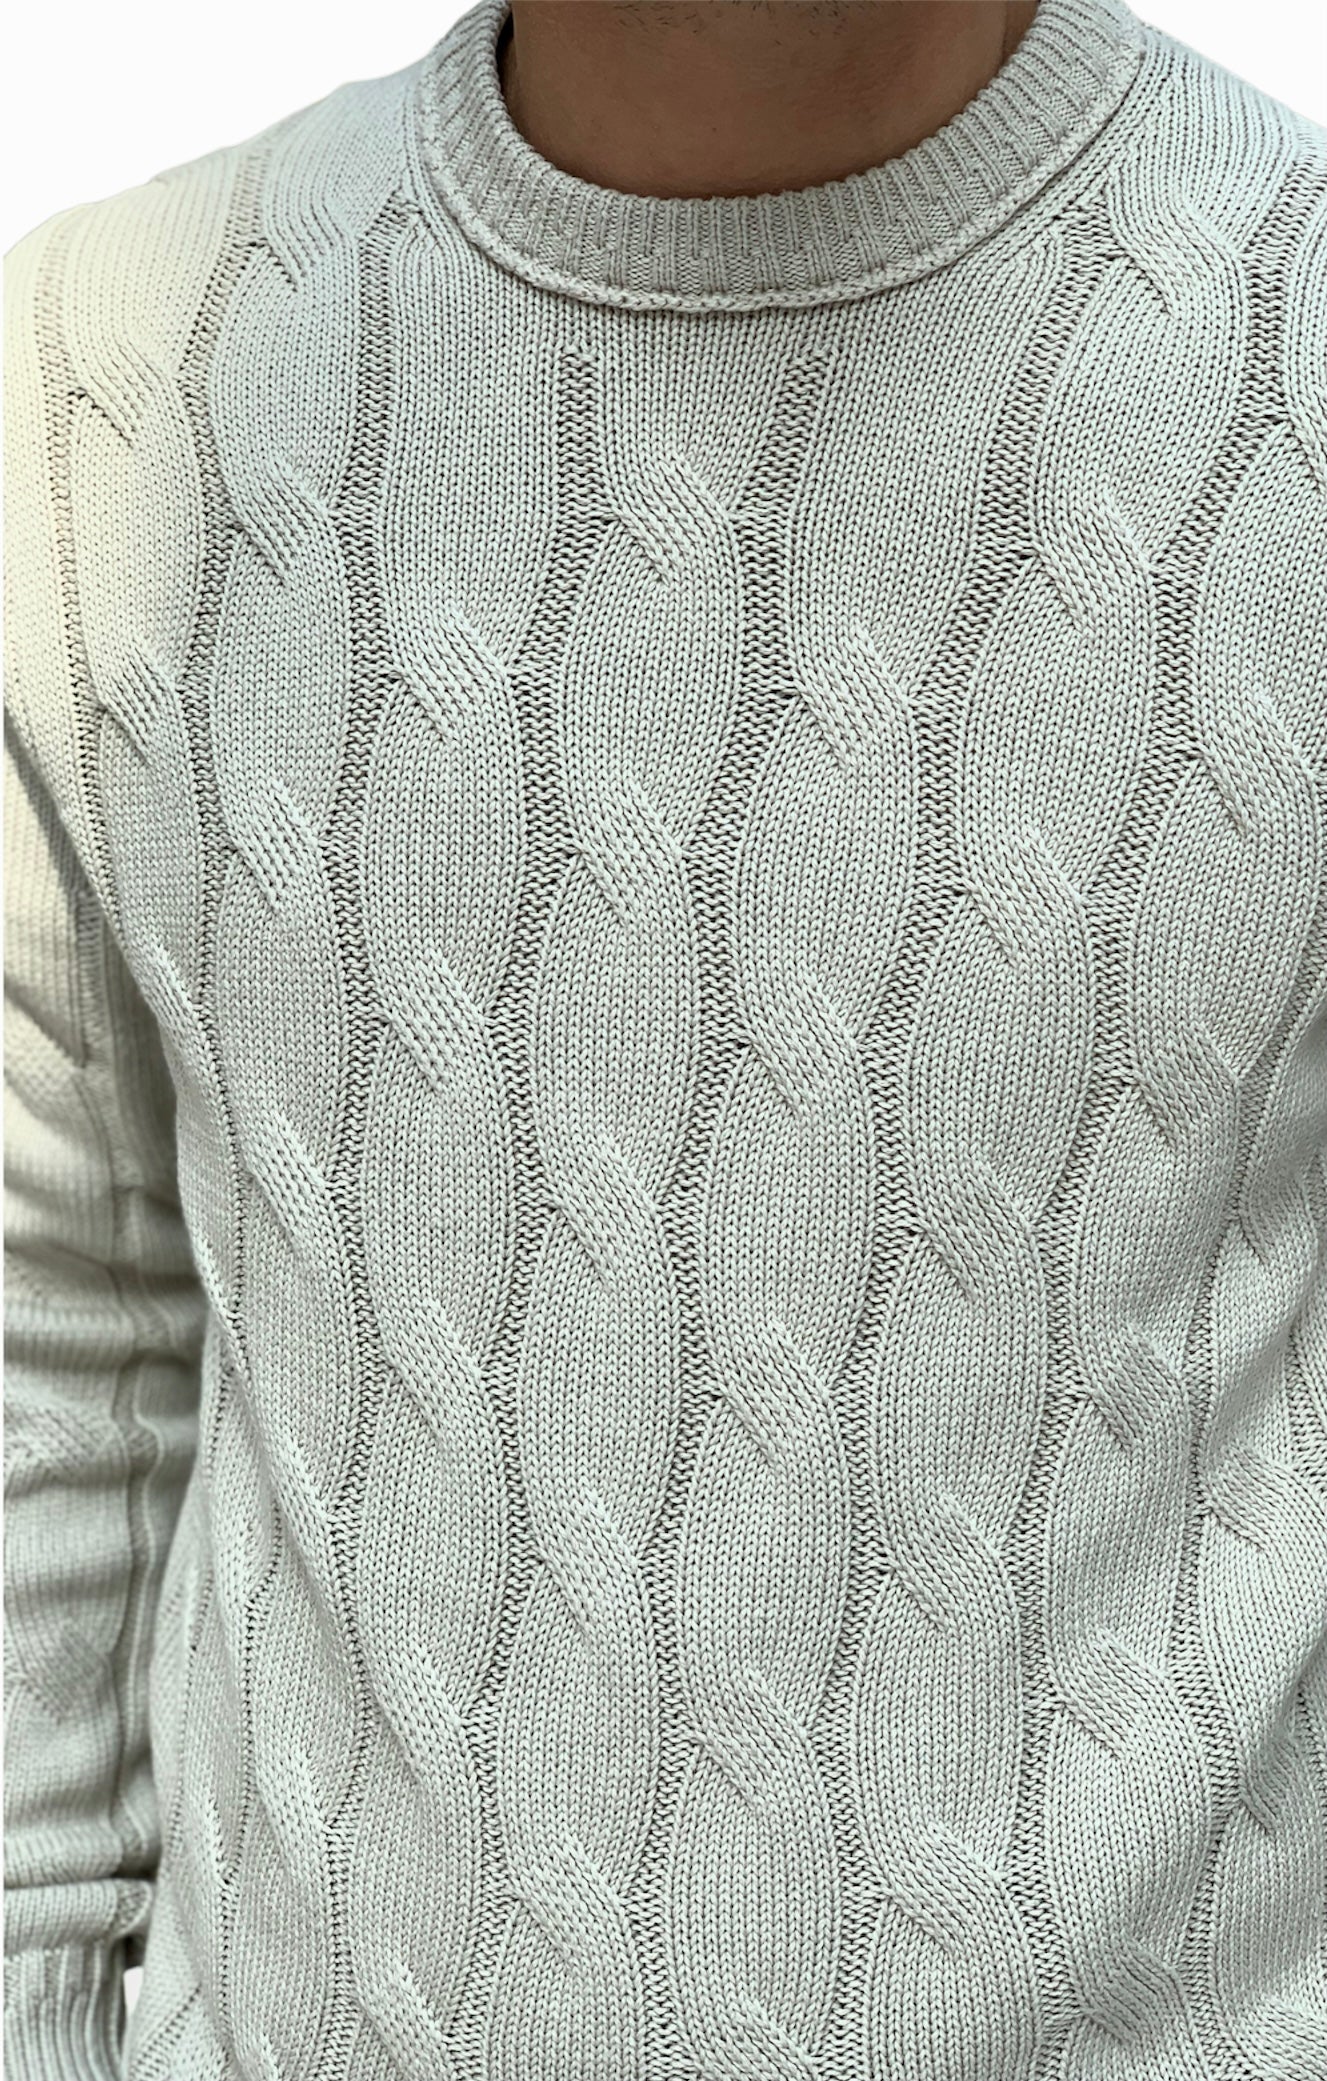 Maglione Trecciato Onsphilip Silver Lining - Taglia XL